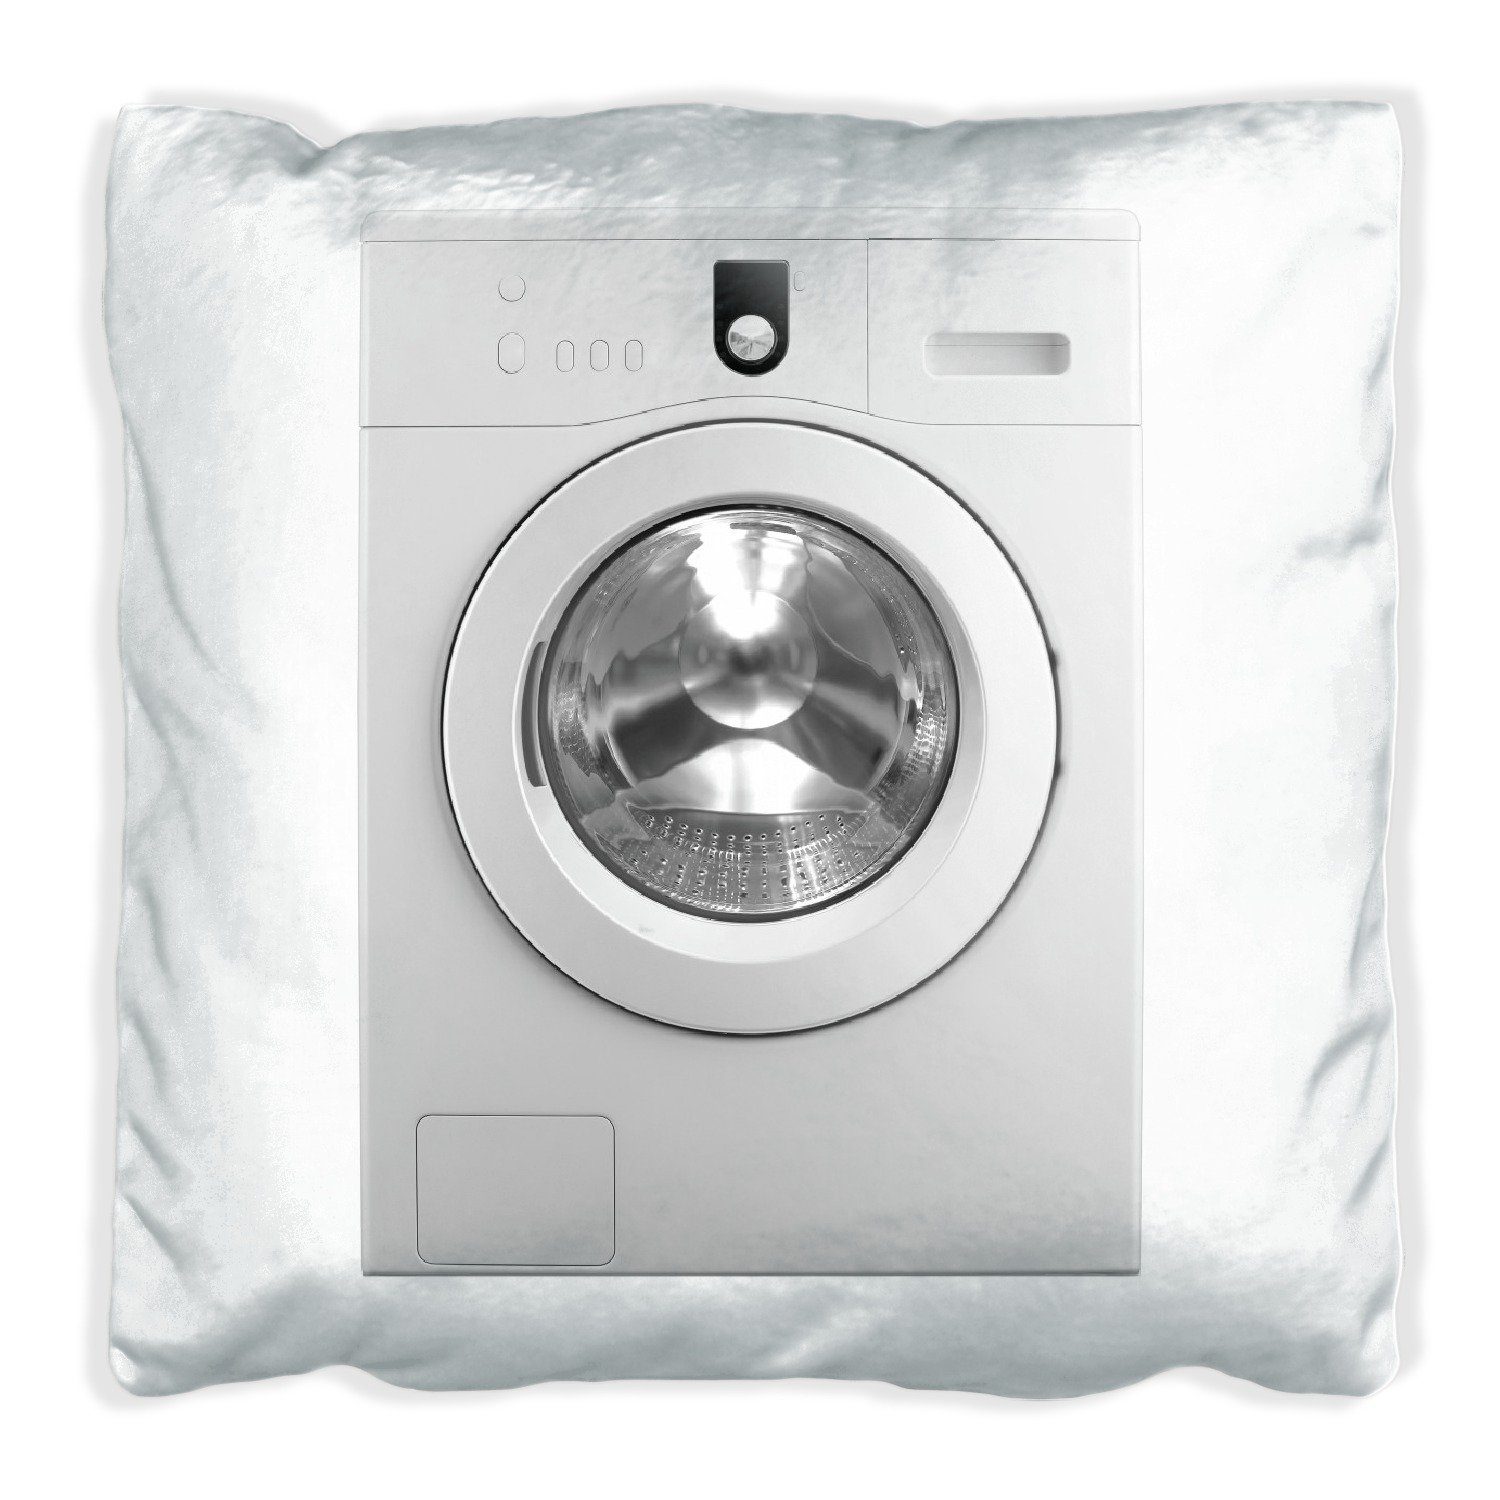 [Zuverlässiger Inlandsversand] Wallario Dekokissen Waschmaschine Frontlader von vorn, handgenäht